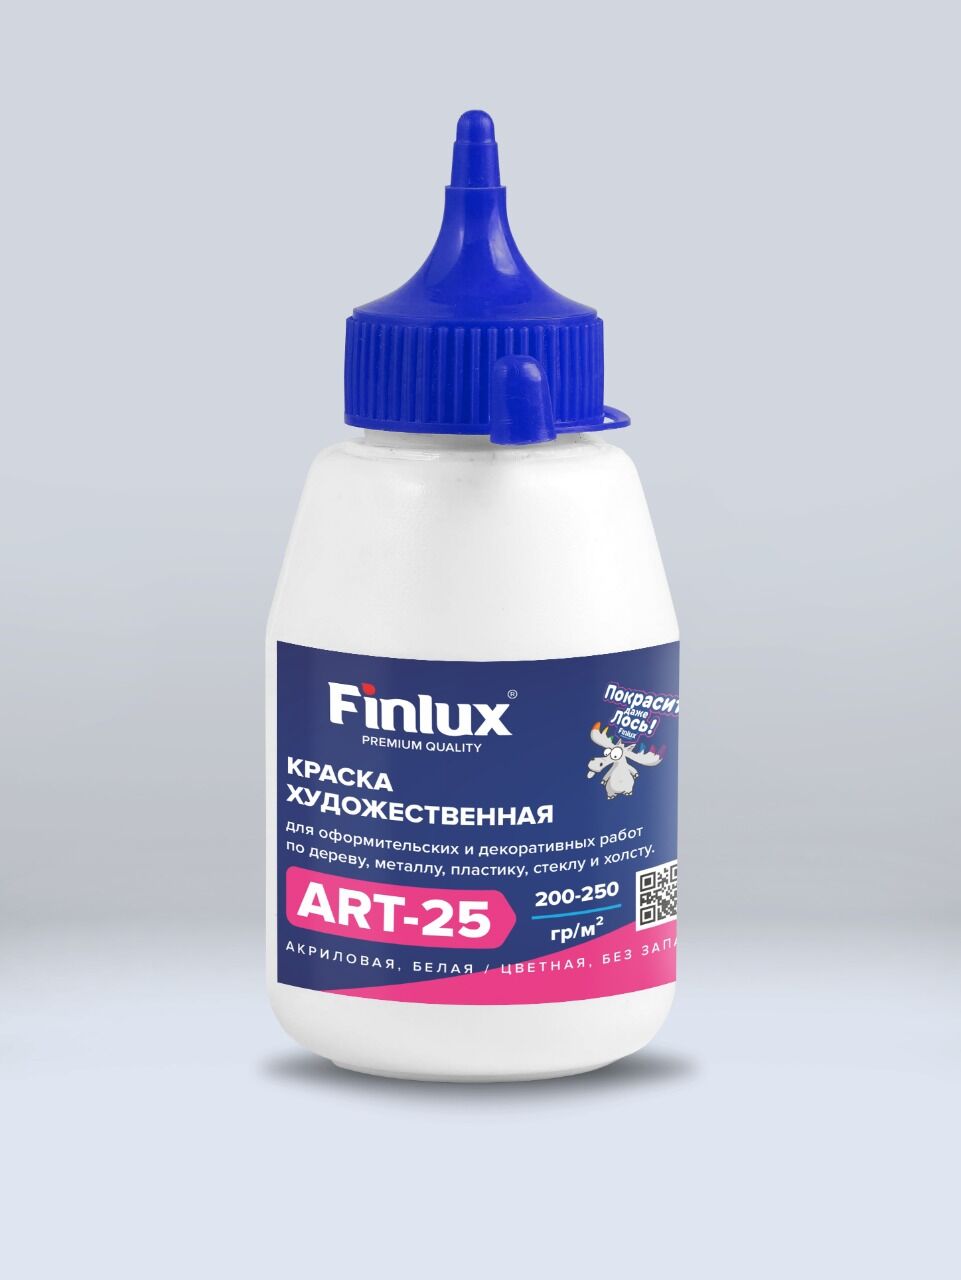 Акриловая краска художественная для рисования Белый, 0,3 кг Finlux ART 25 –матовая